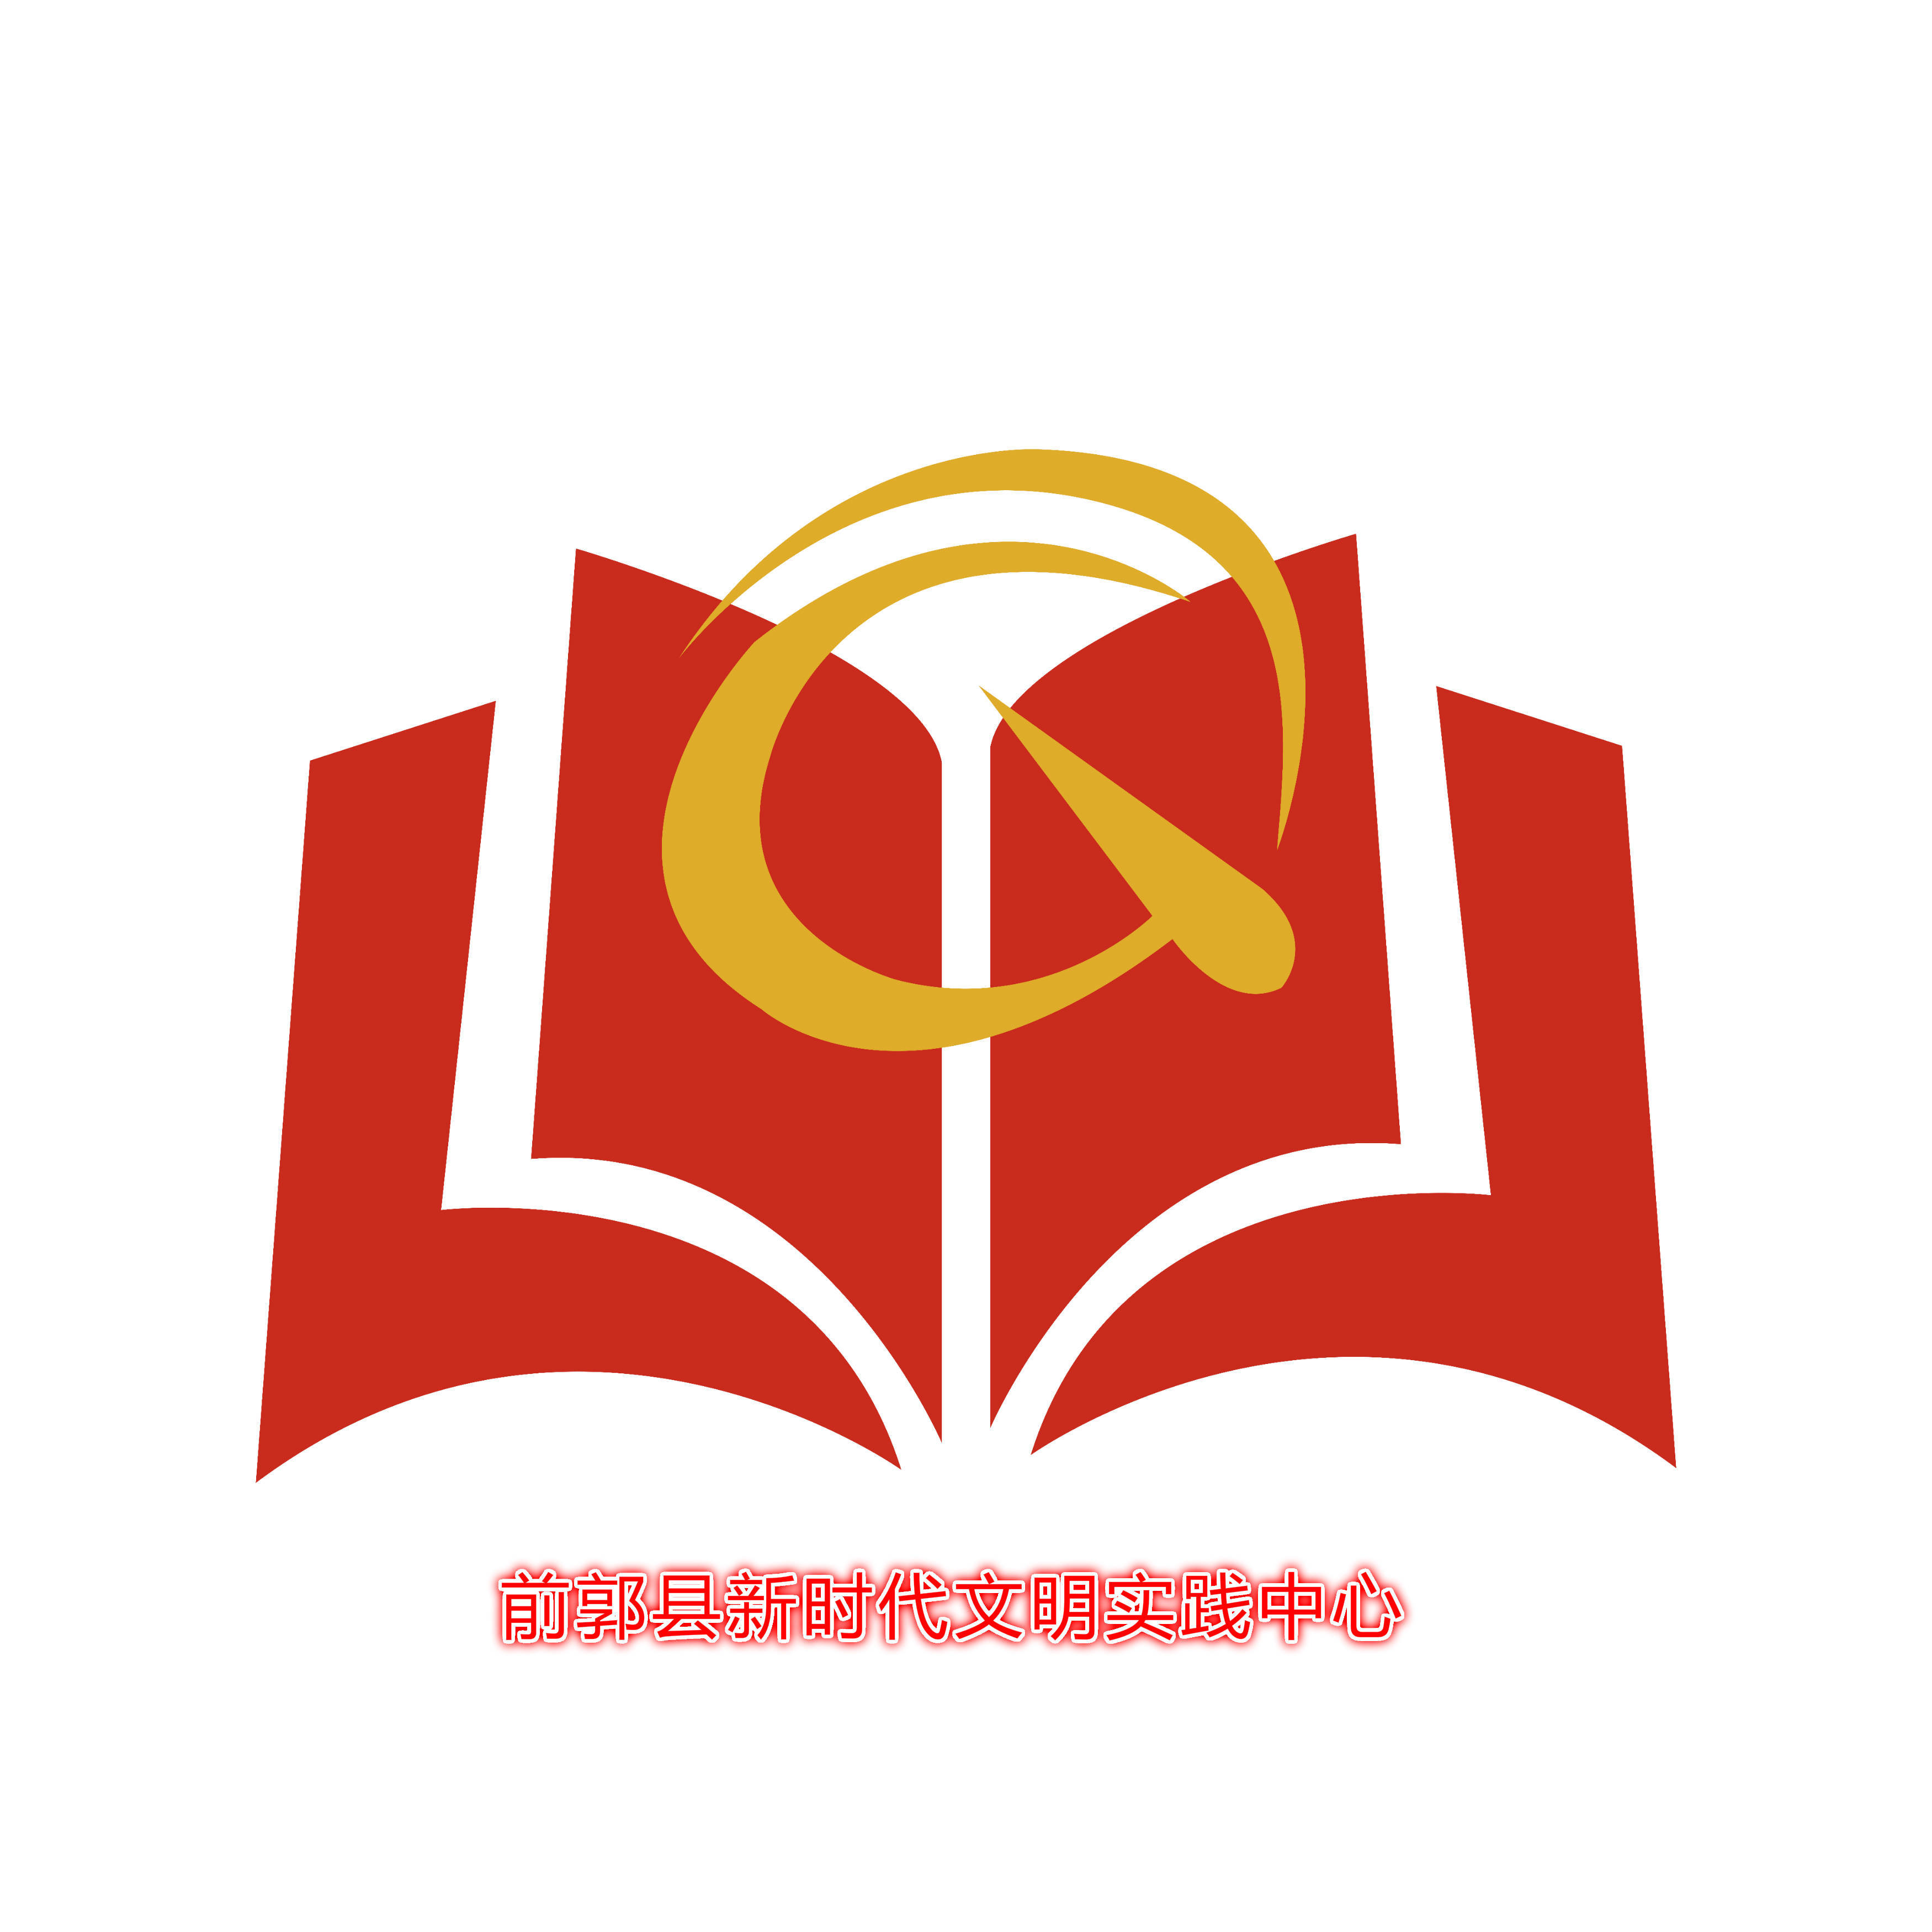 【我为群众办实事】前郭县图书馆举办航天知识科普活动